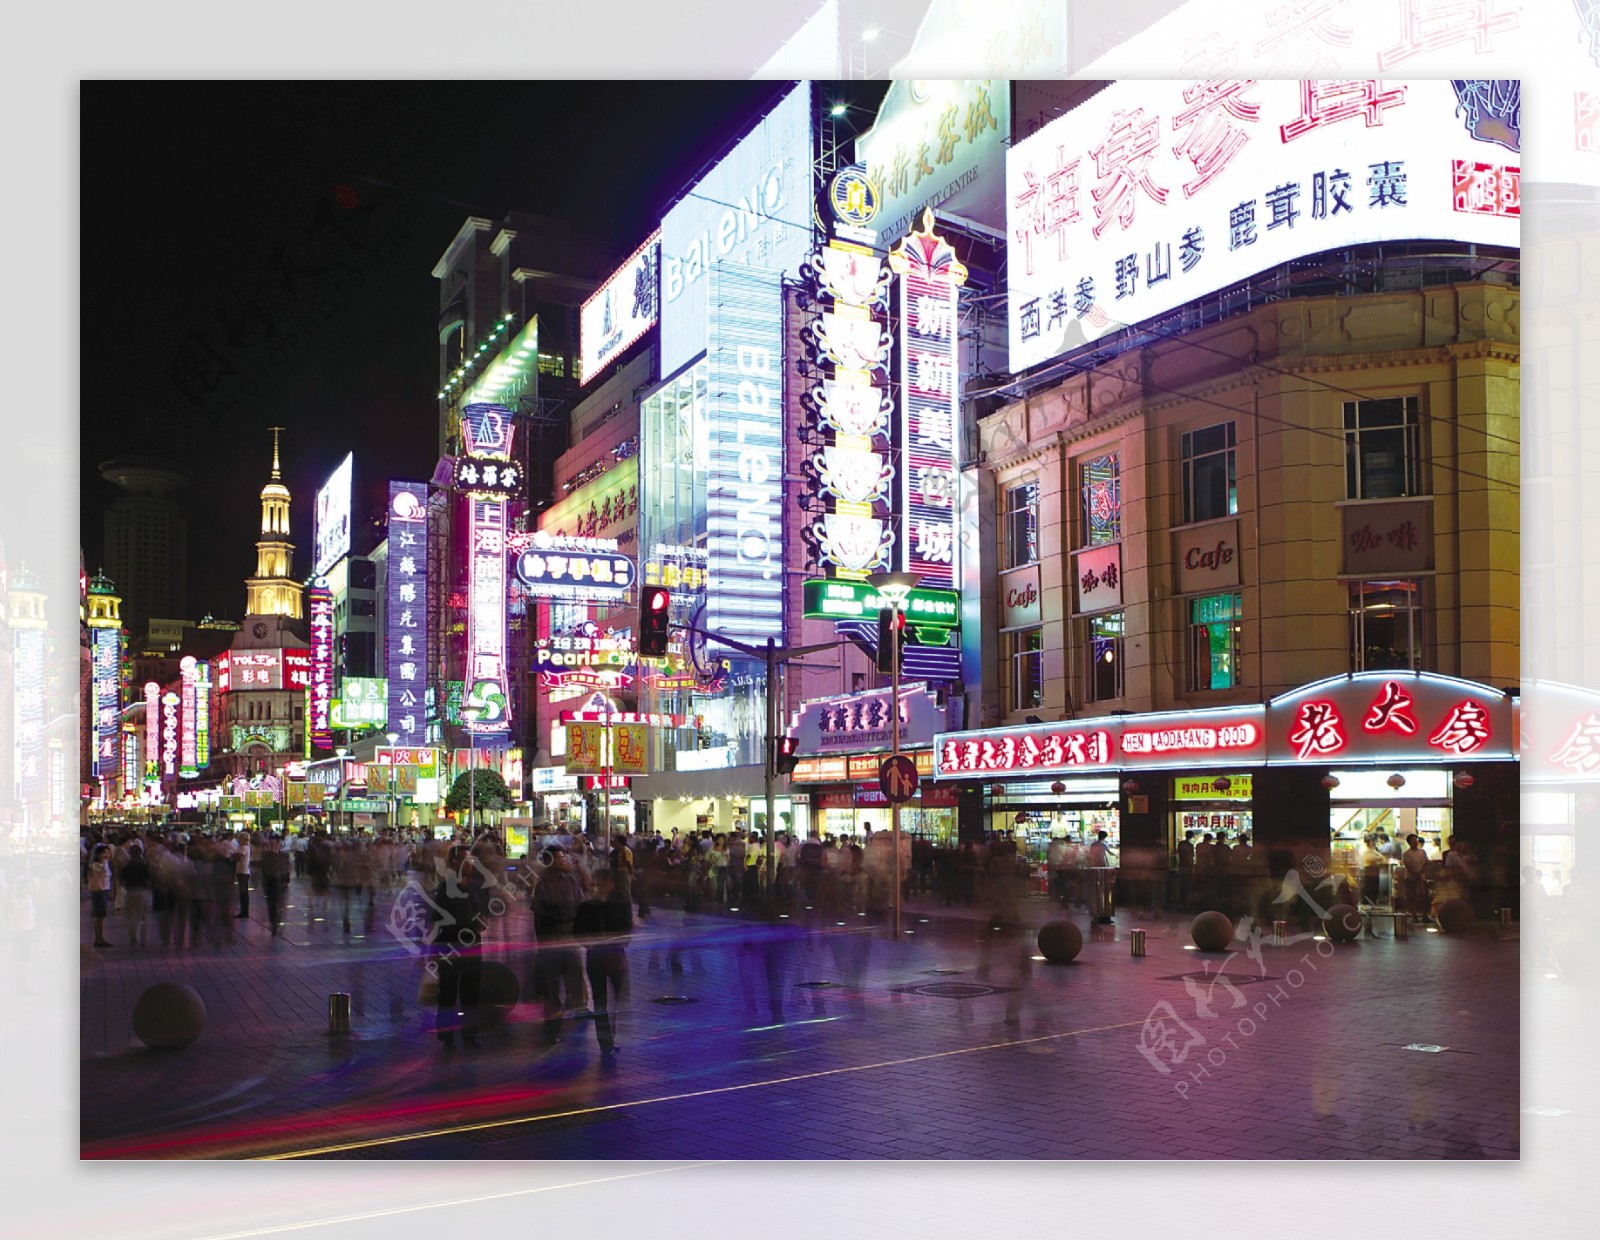 上海南京东路步行街夜景图片